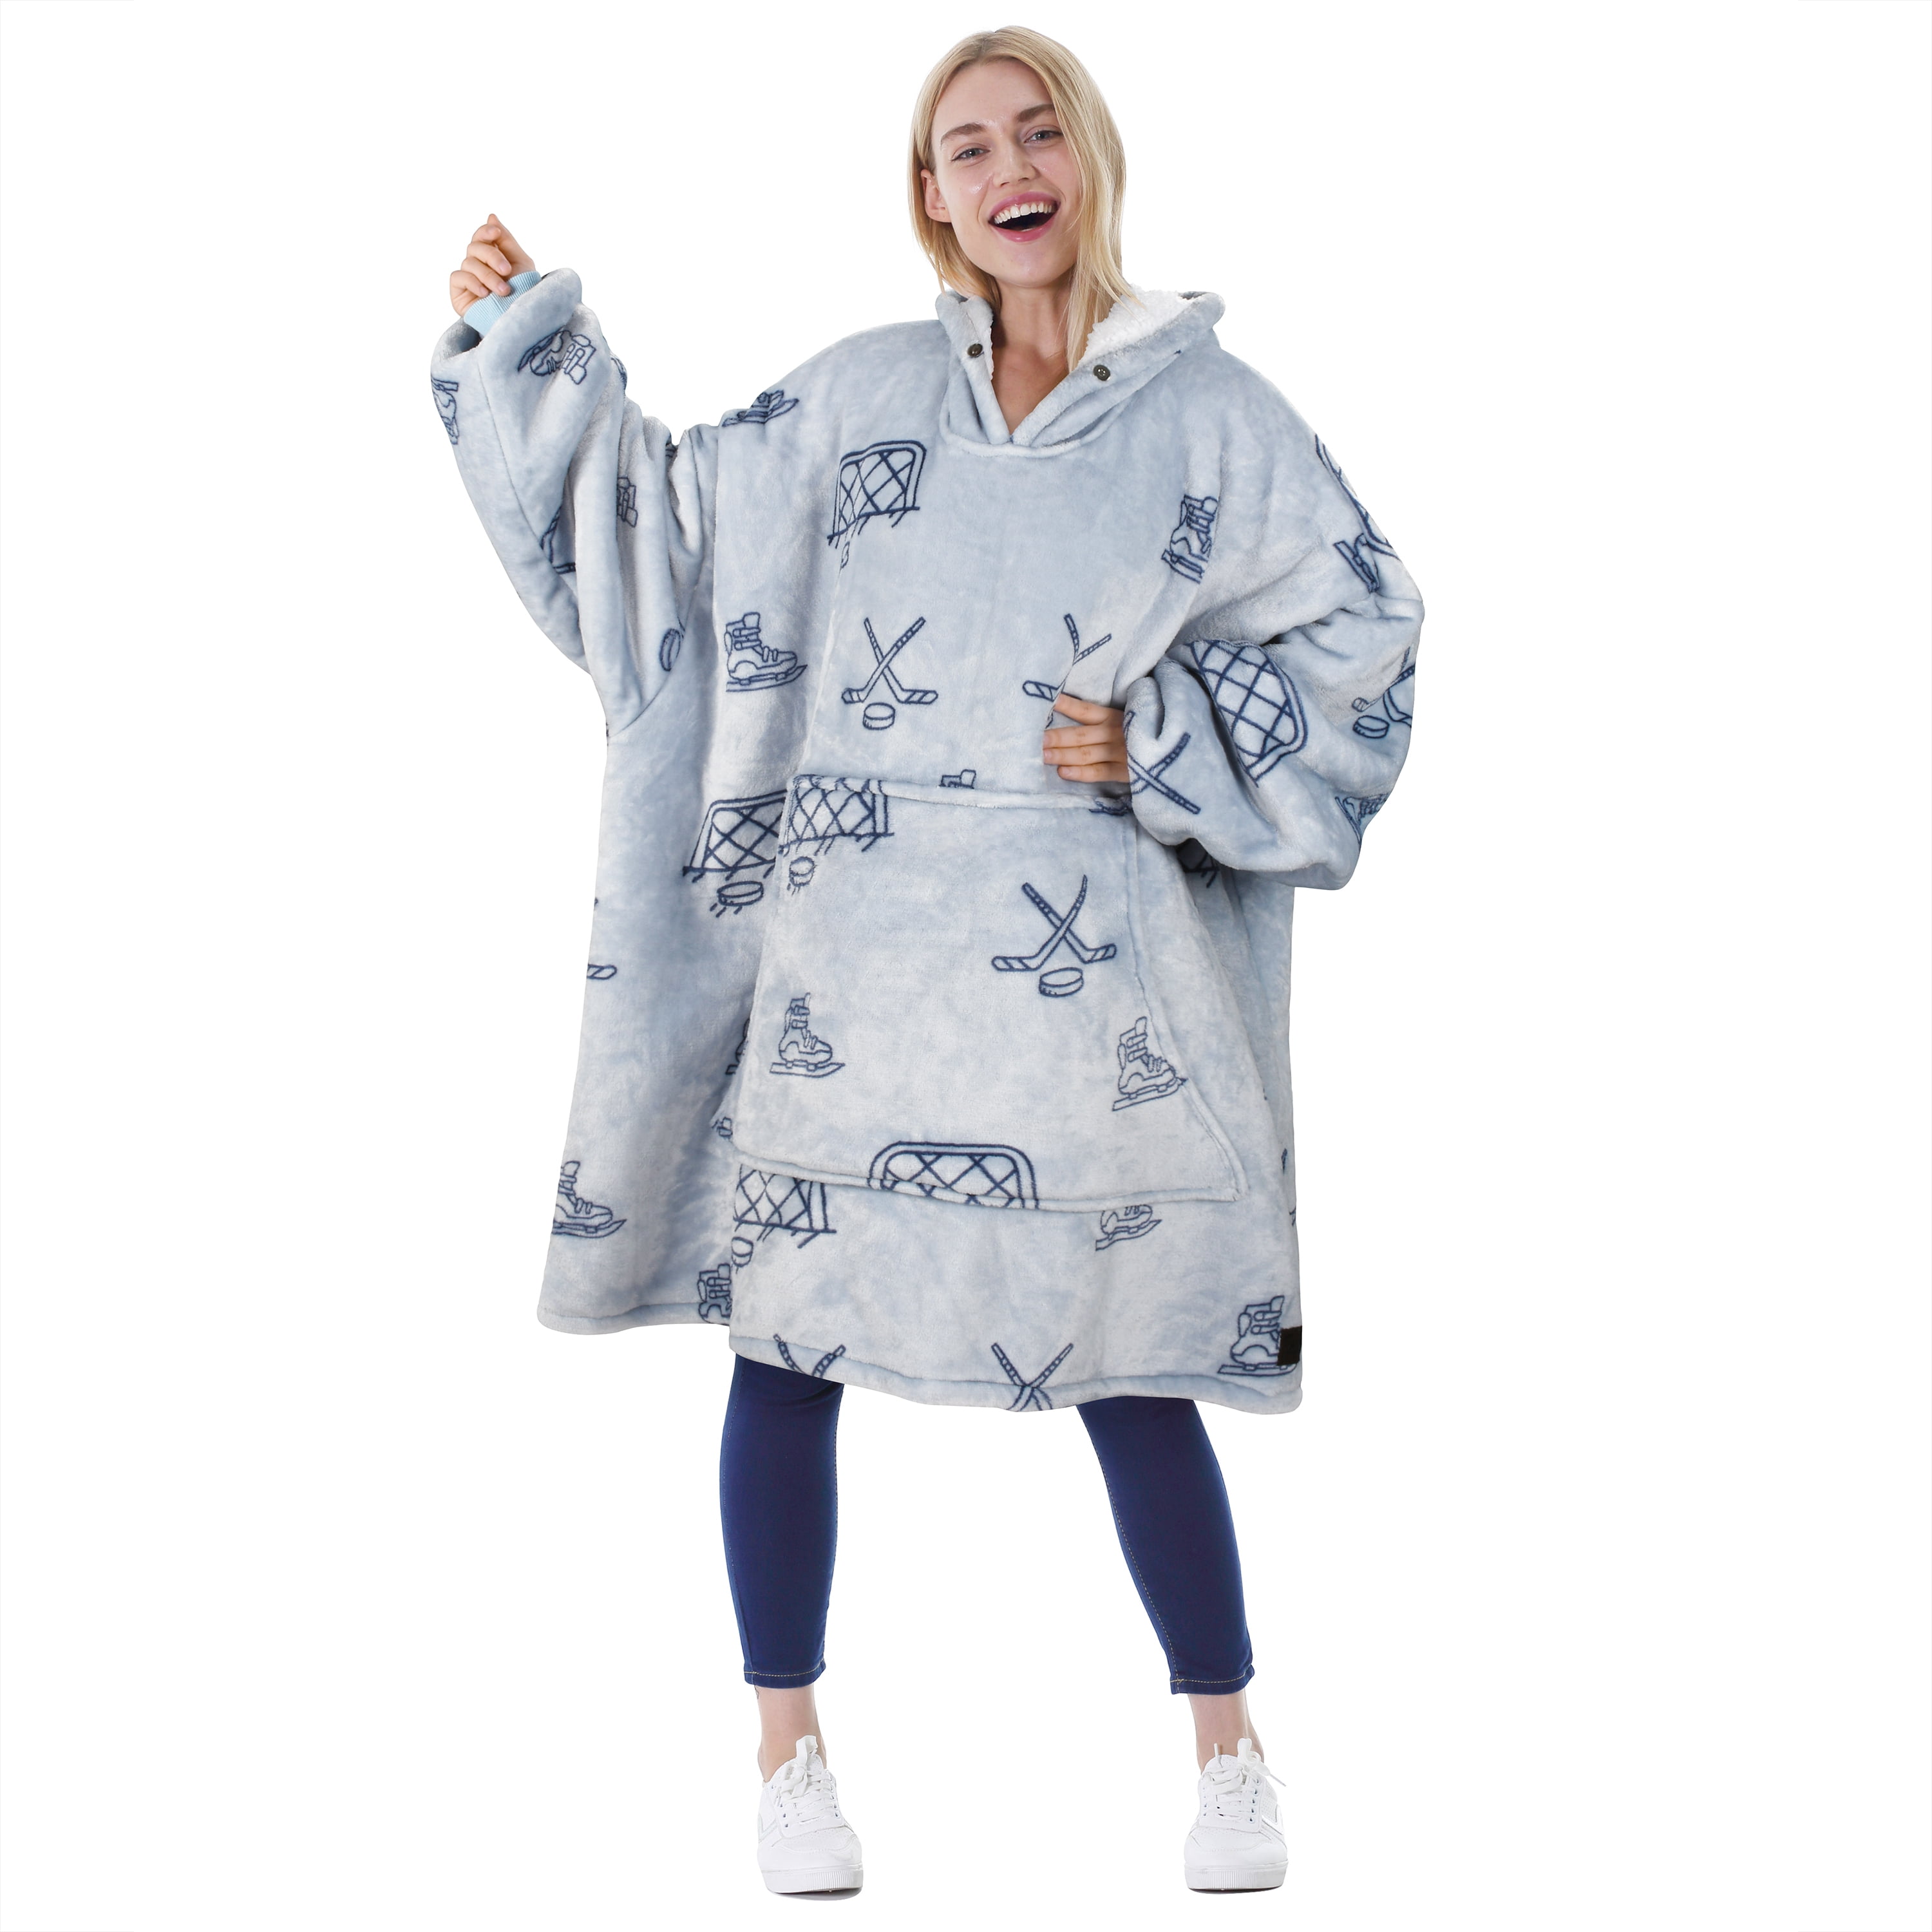 Tirrinia Oversized Wearable Blanket Hoodie, Blanket Hoodie for Women Men Adult, Soft Blanket Sweatshirt Hoodie, Large Pocket